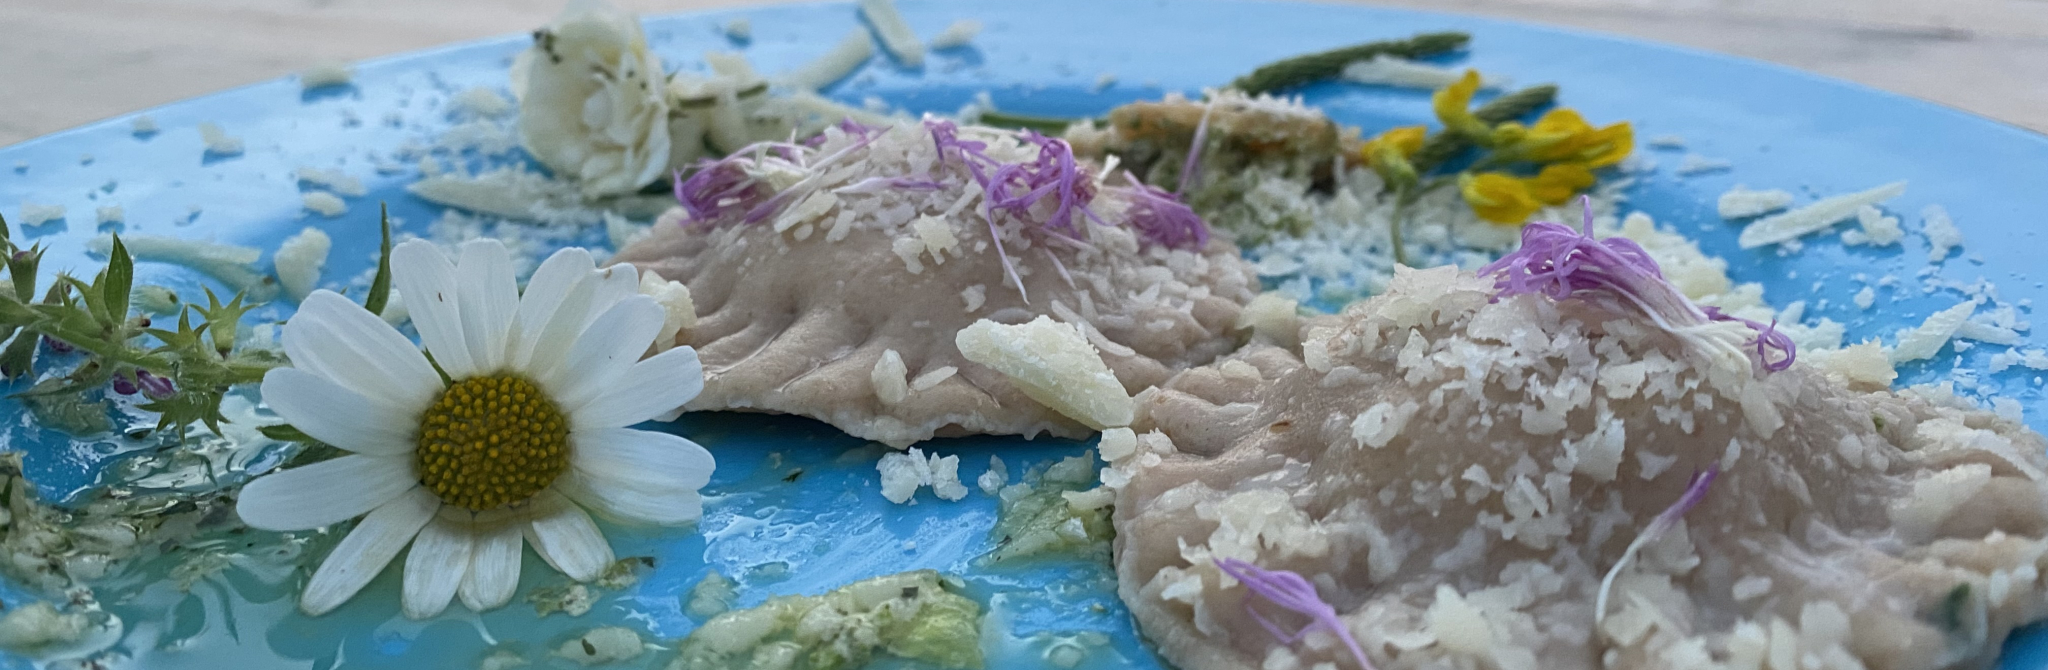 Kochen mit Wildkräutern: wildgefüllte Ravioli mit Blüten